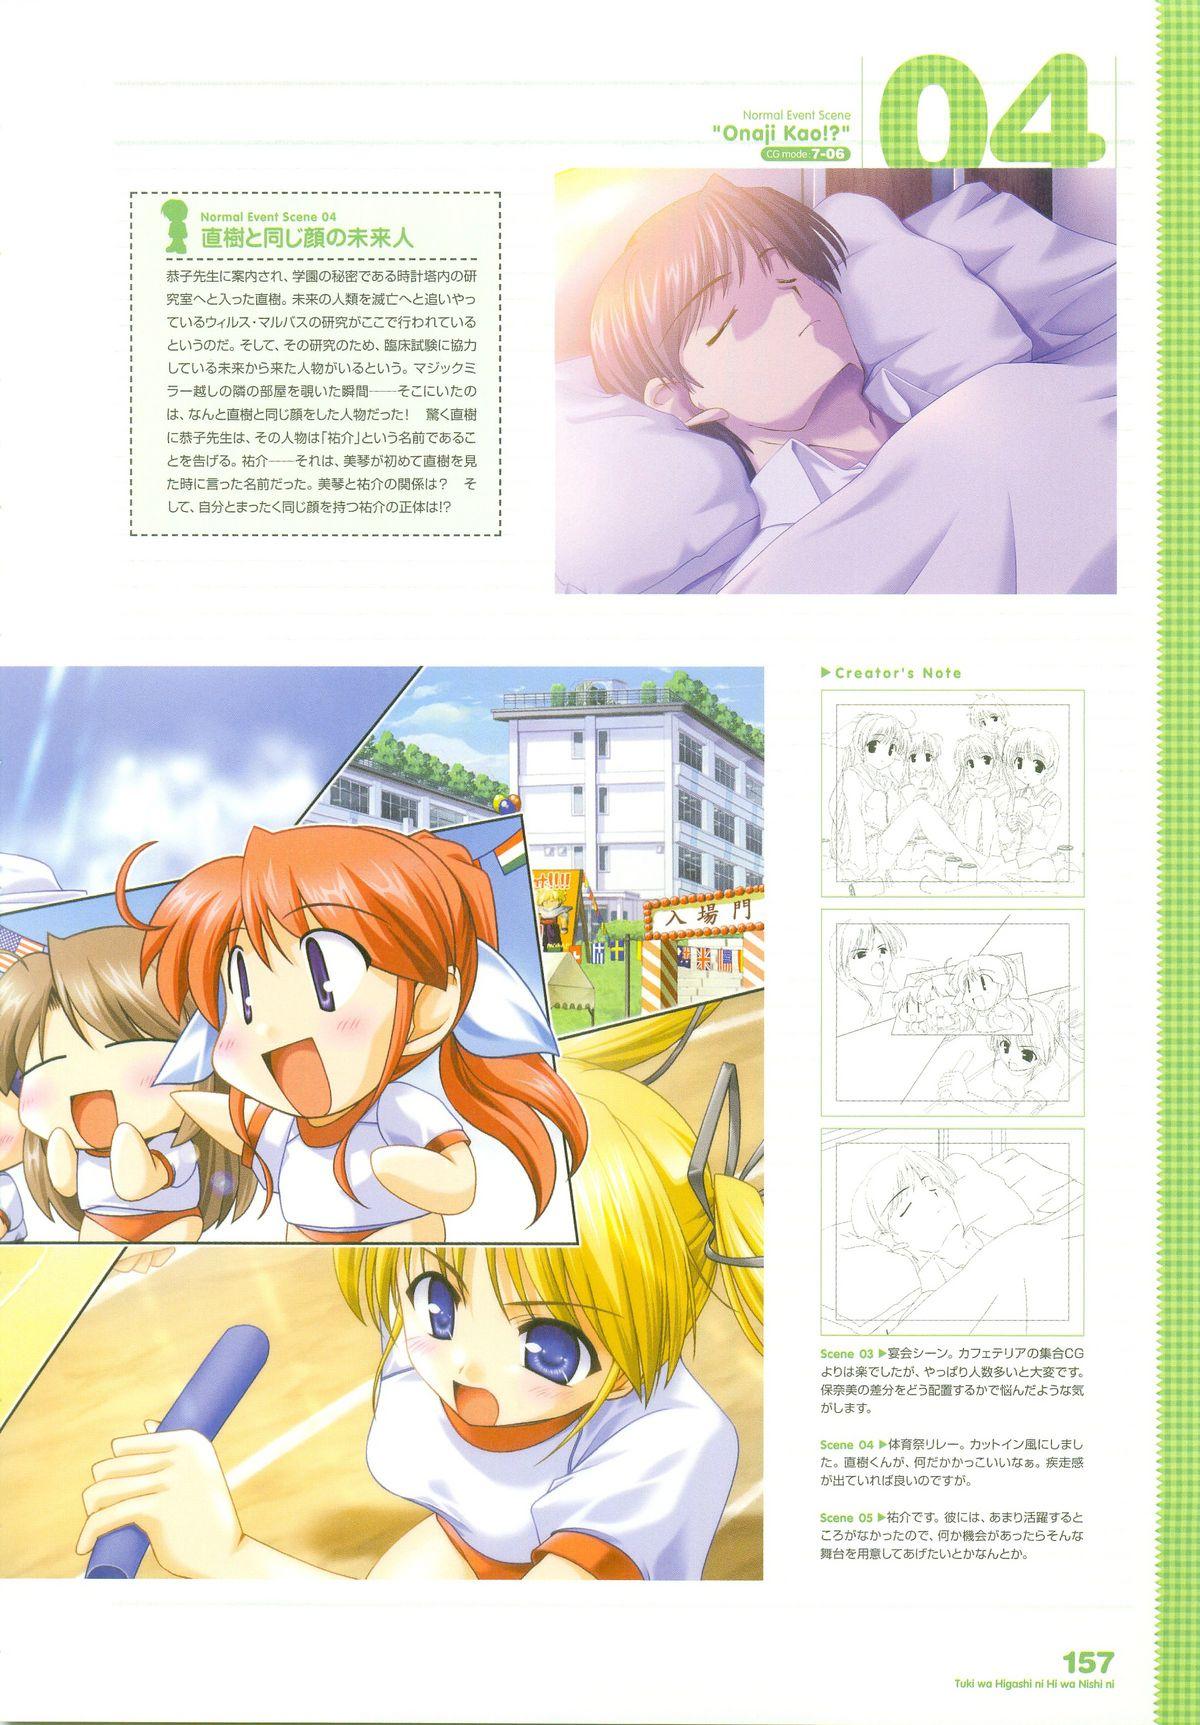 Tsuki wa Higashi ni Hi wa Nishi ni ～ Operation Sanctuary ～ Visual Fan Book 193